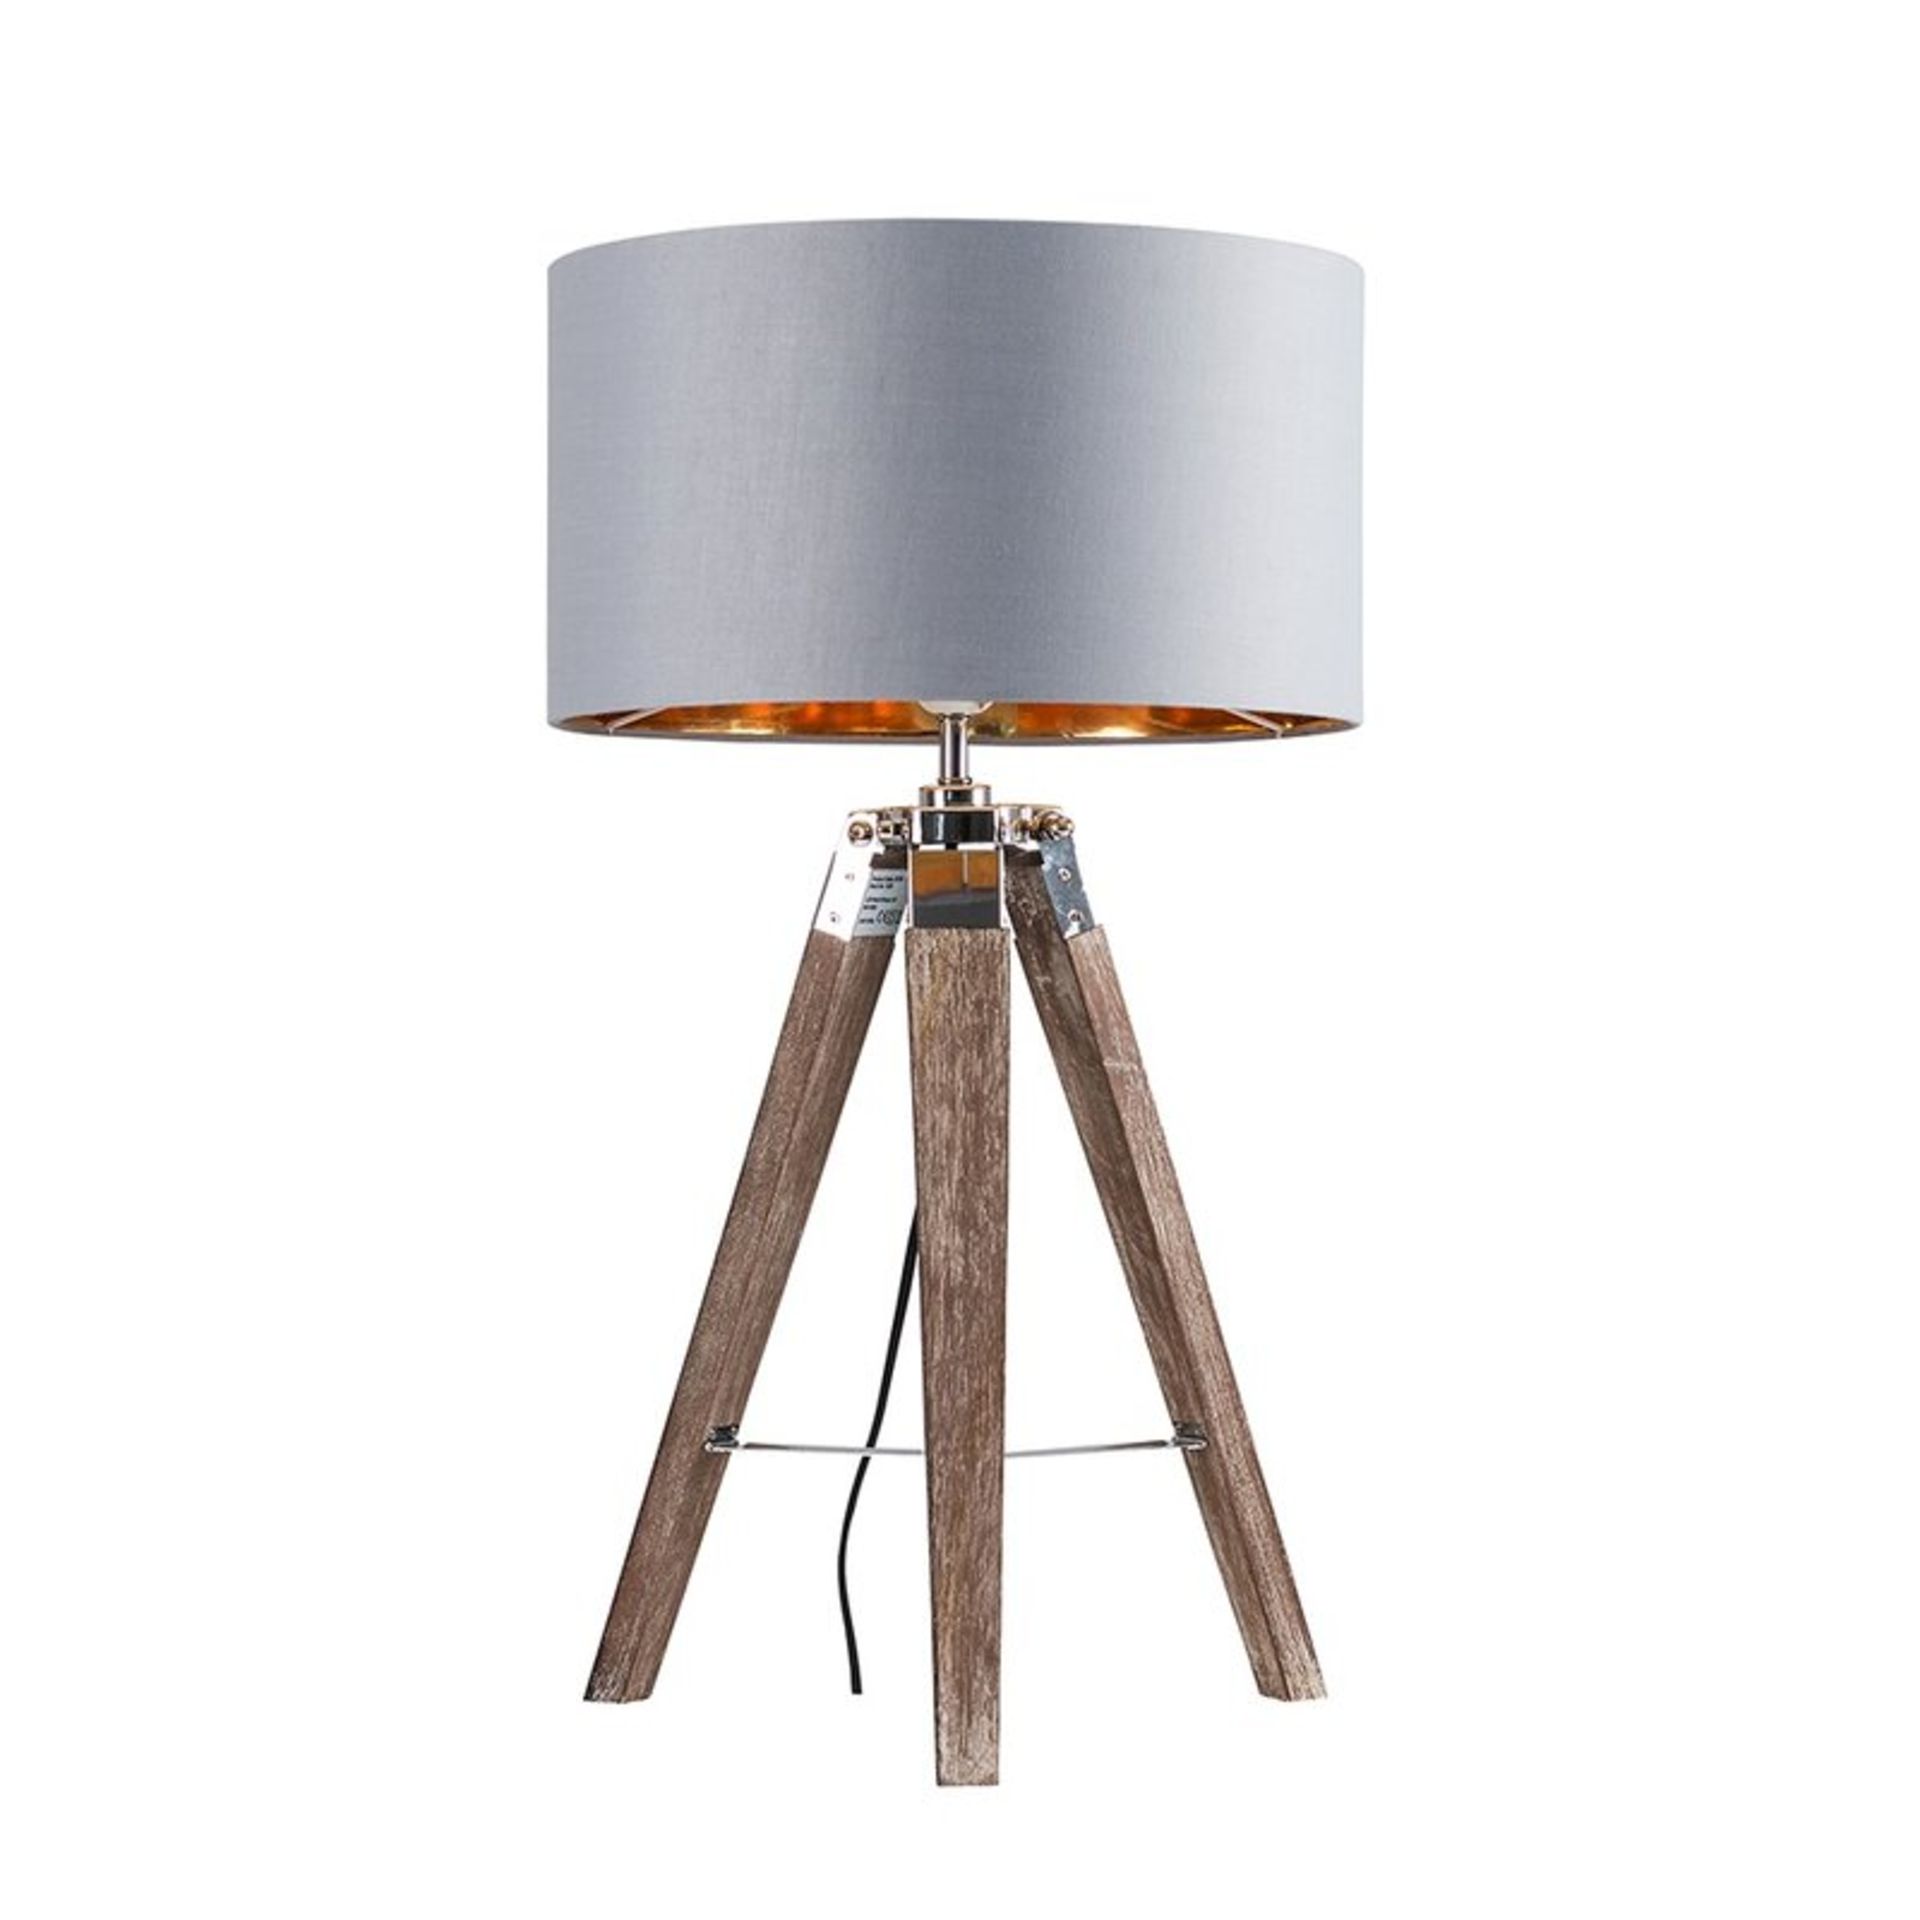 Bella Vista 50cm Tripod Table Lamp - RRP £44.99 (BASE ONLY